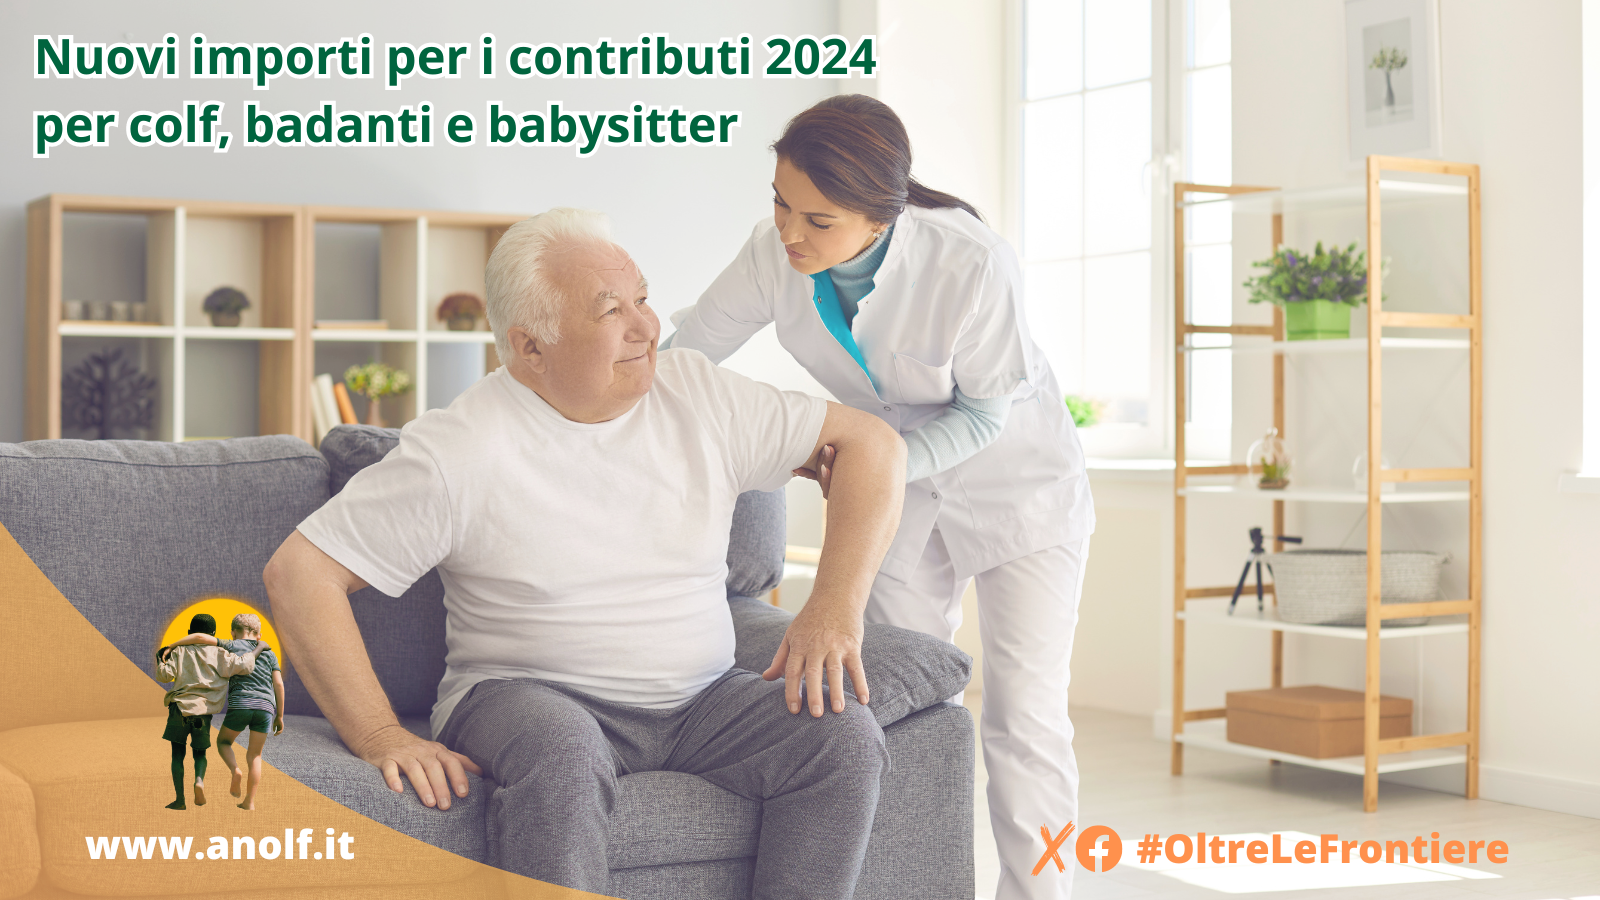 Nuovi importi per i contributi 2024 per colf, badanti e babysitter.